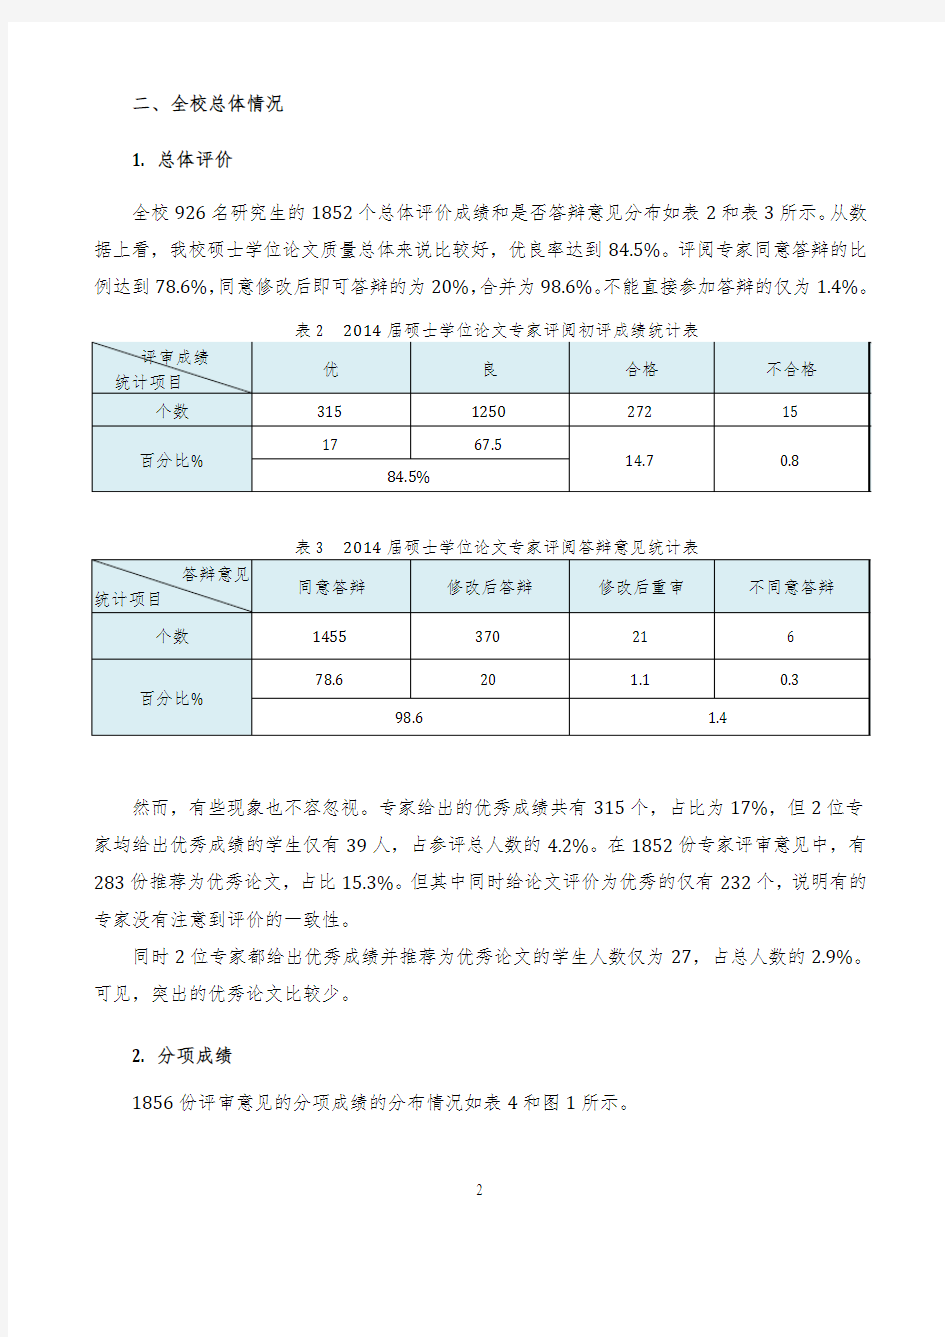 重庆邮电大学2014硕士学位论文质量分析报告